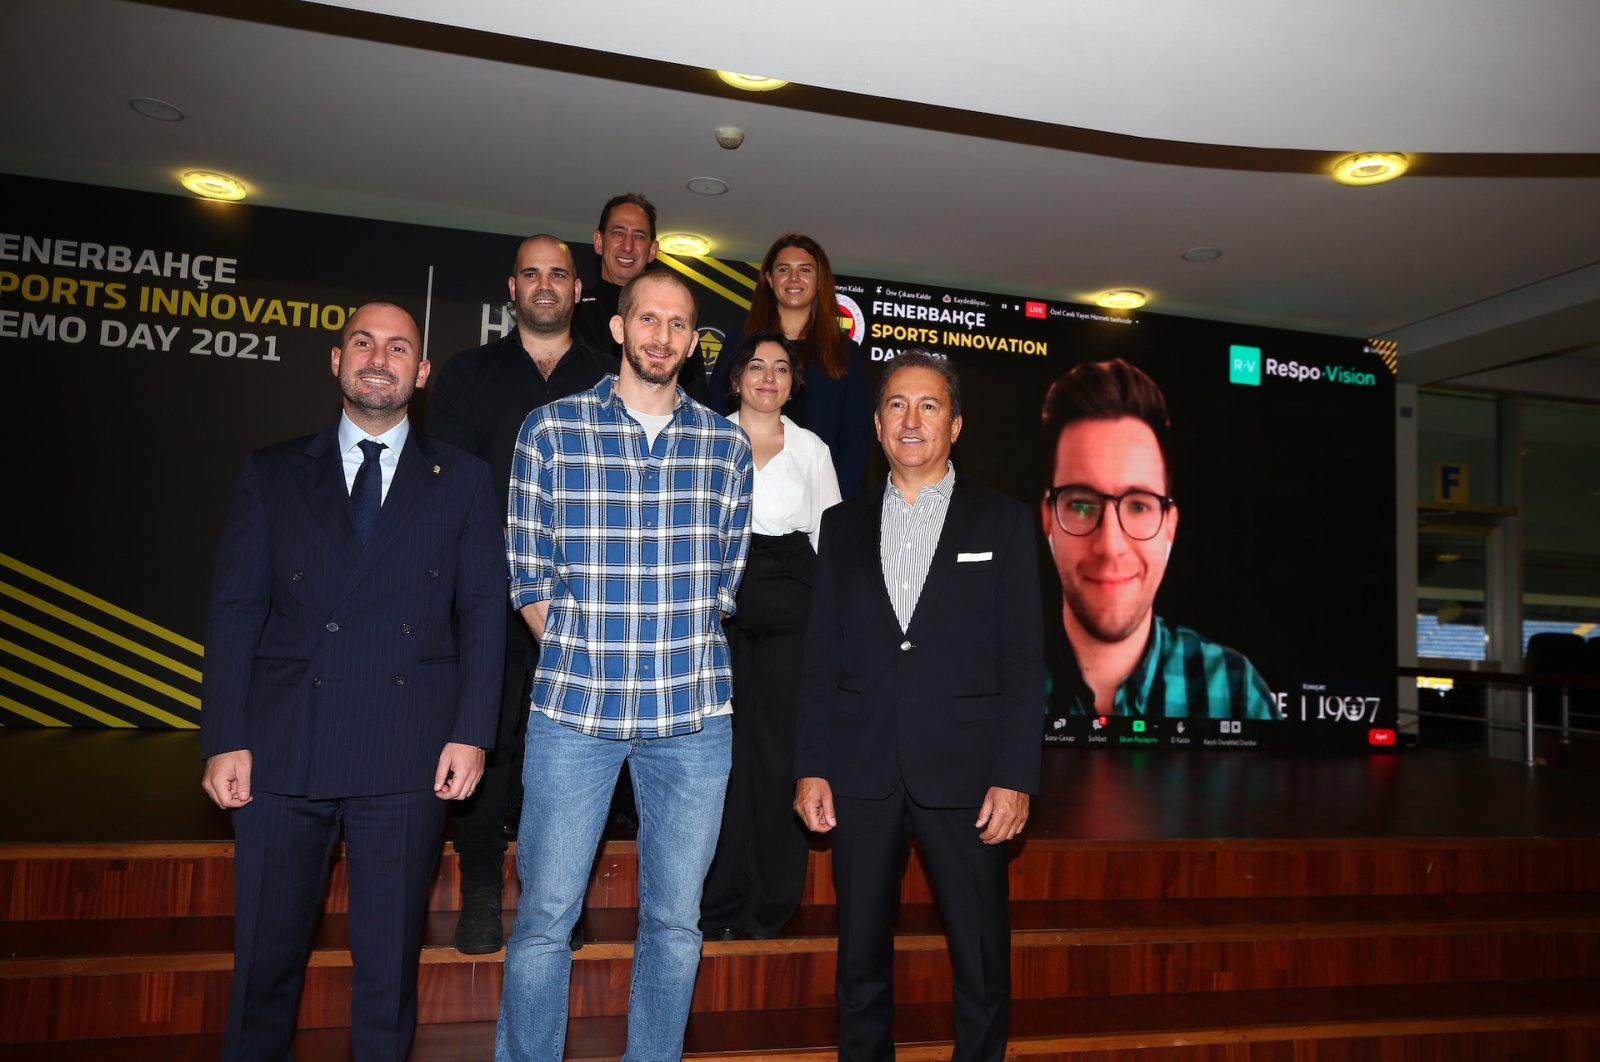 Raksasa Turki Fenerbahe menjanjikan dukungan untuk startup teknologi olahraga